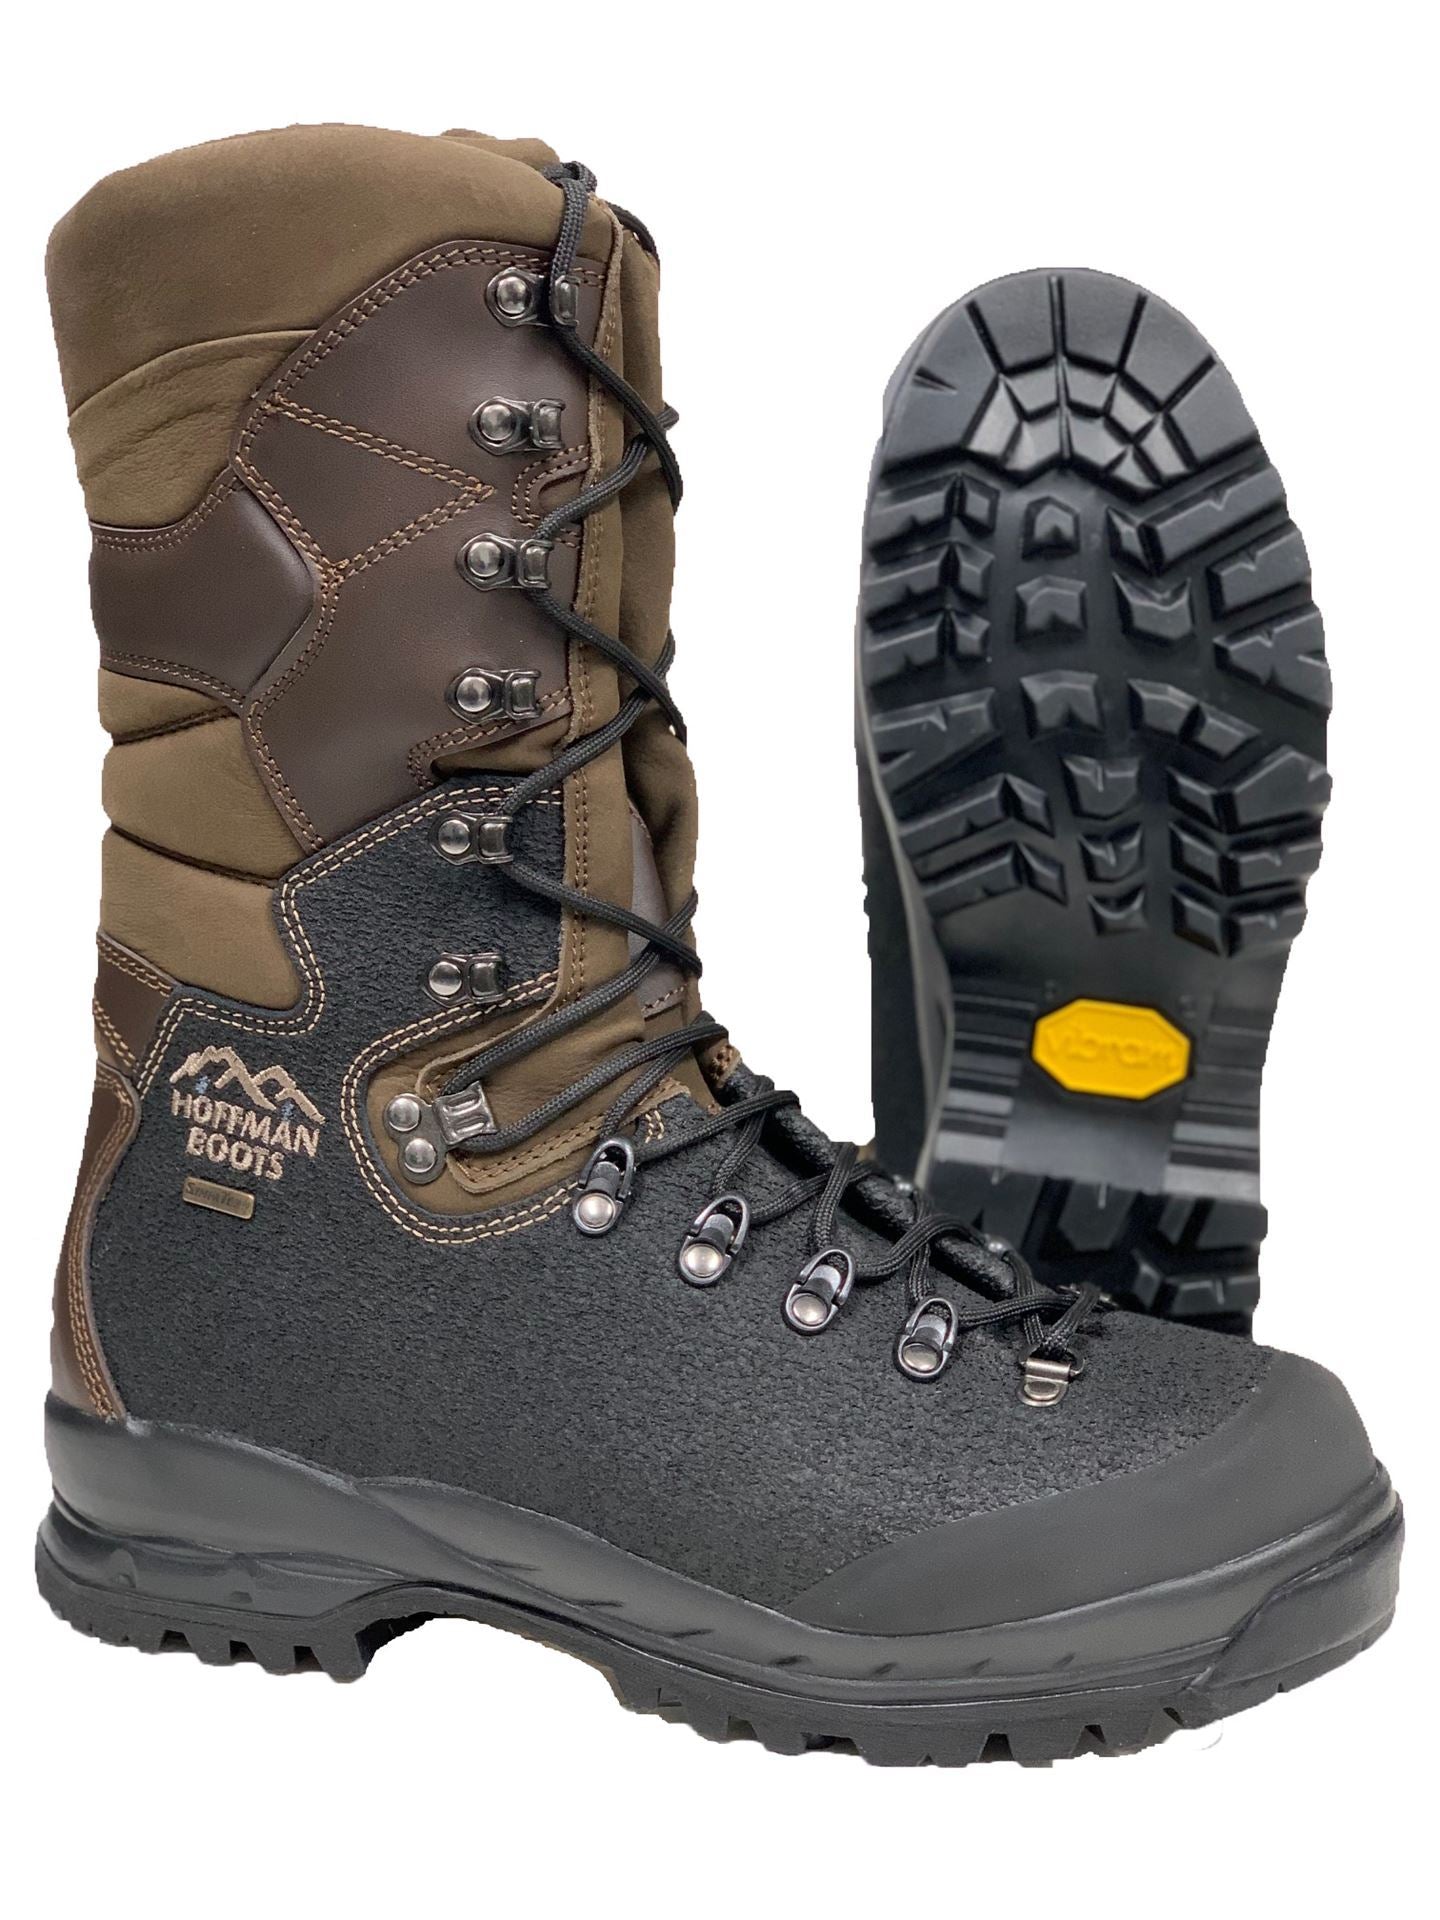 Hoffman Boots: Lineman, Climbing, Caulk & Pac– Drew's Boots